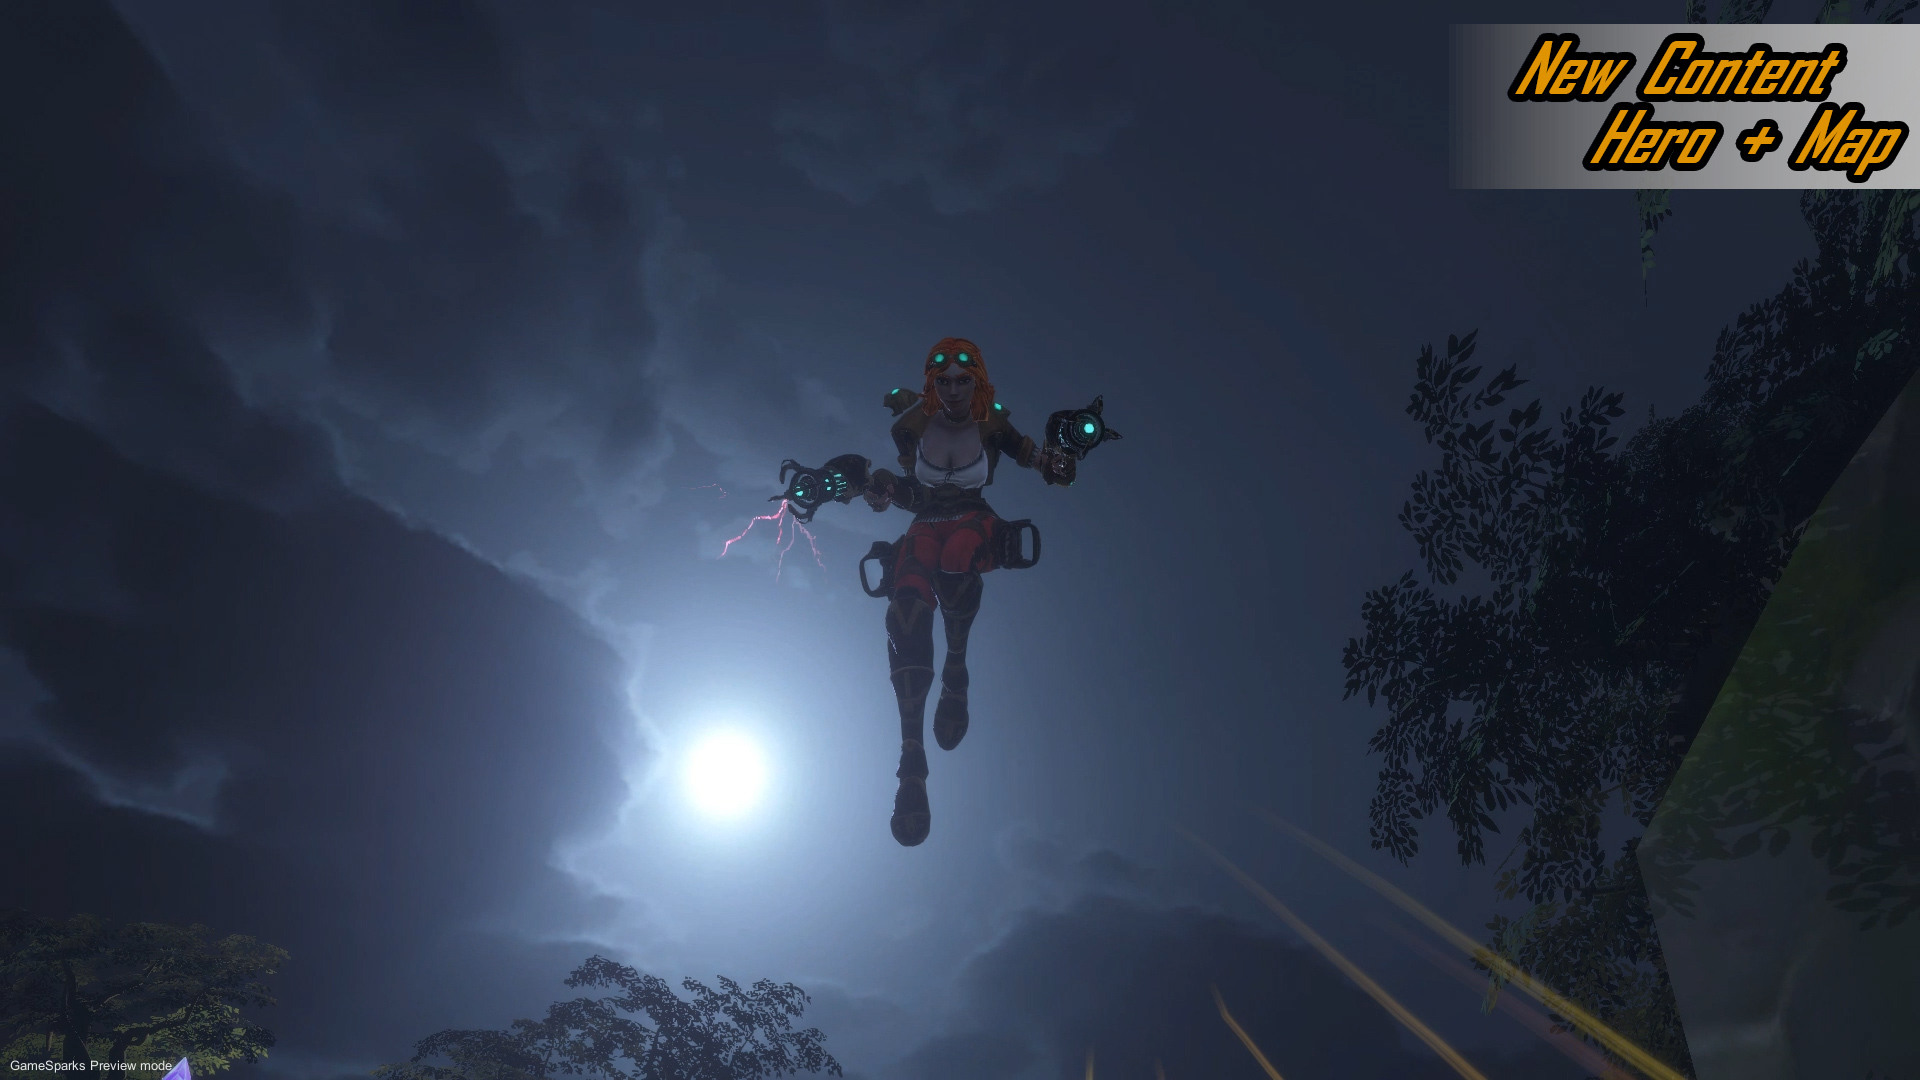 BattleSky VR screenshot